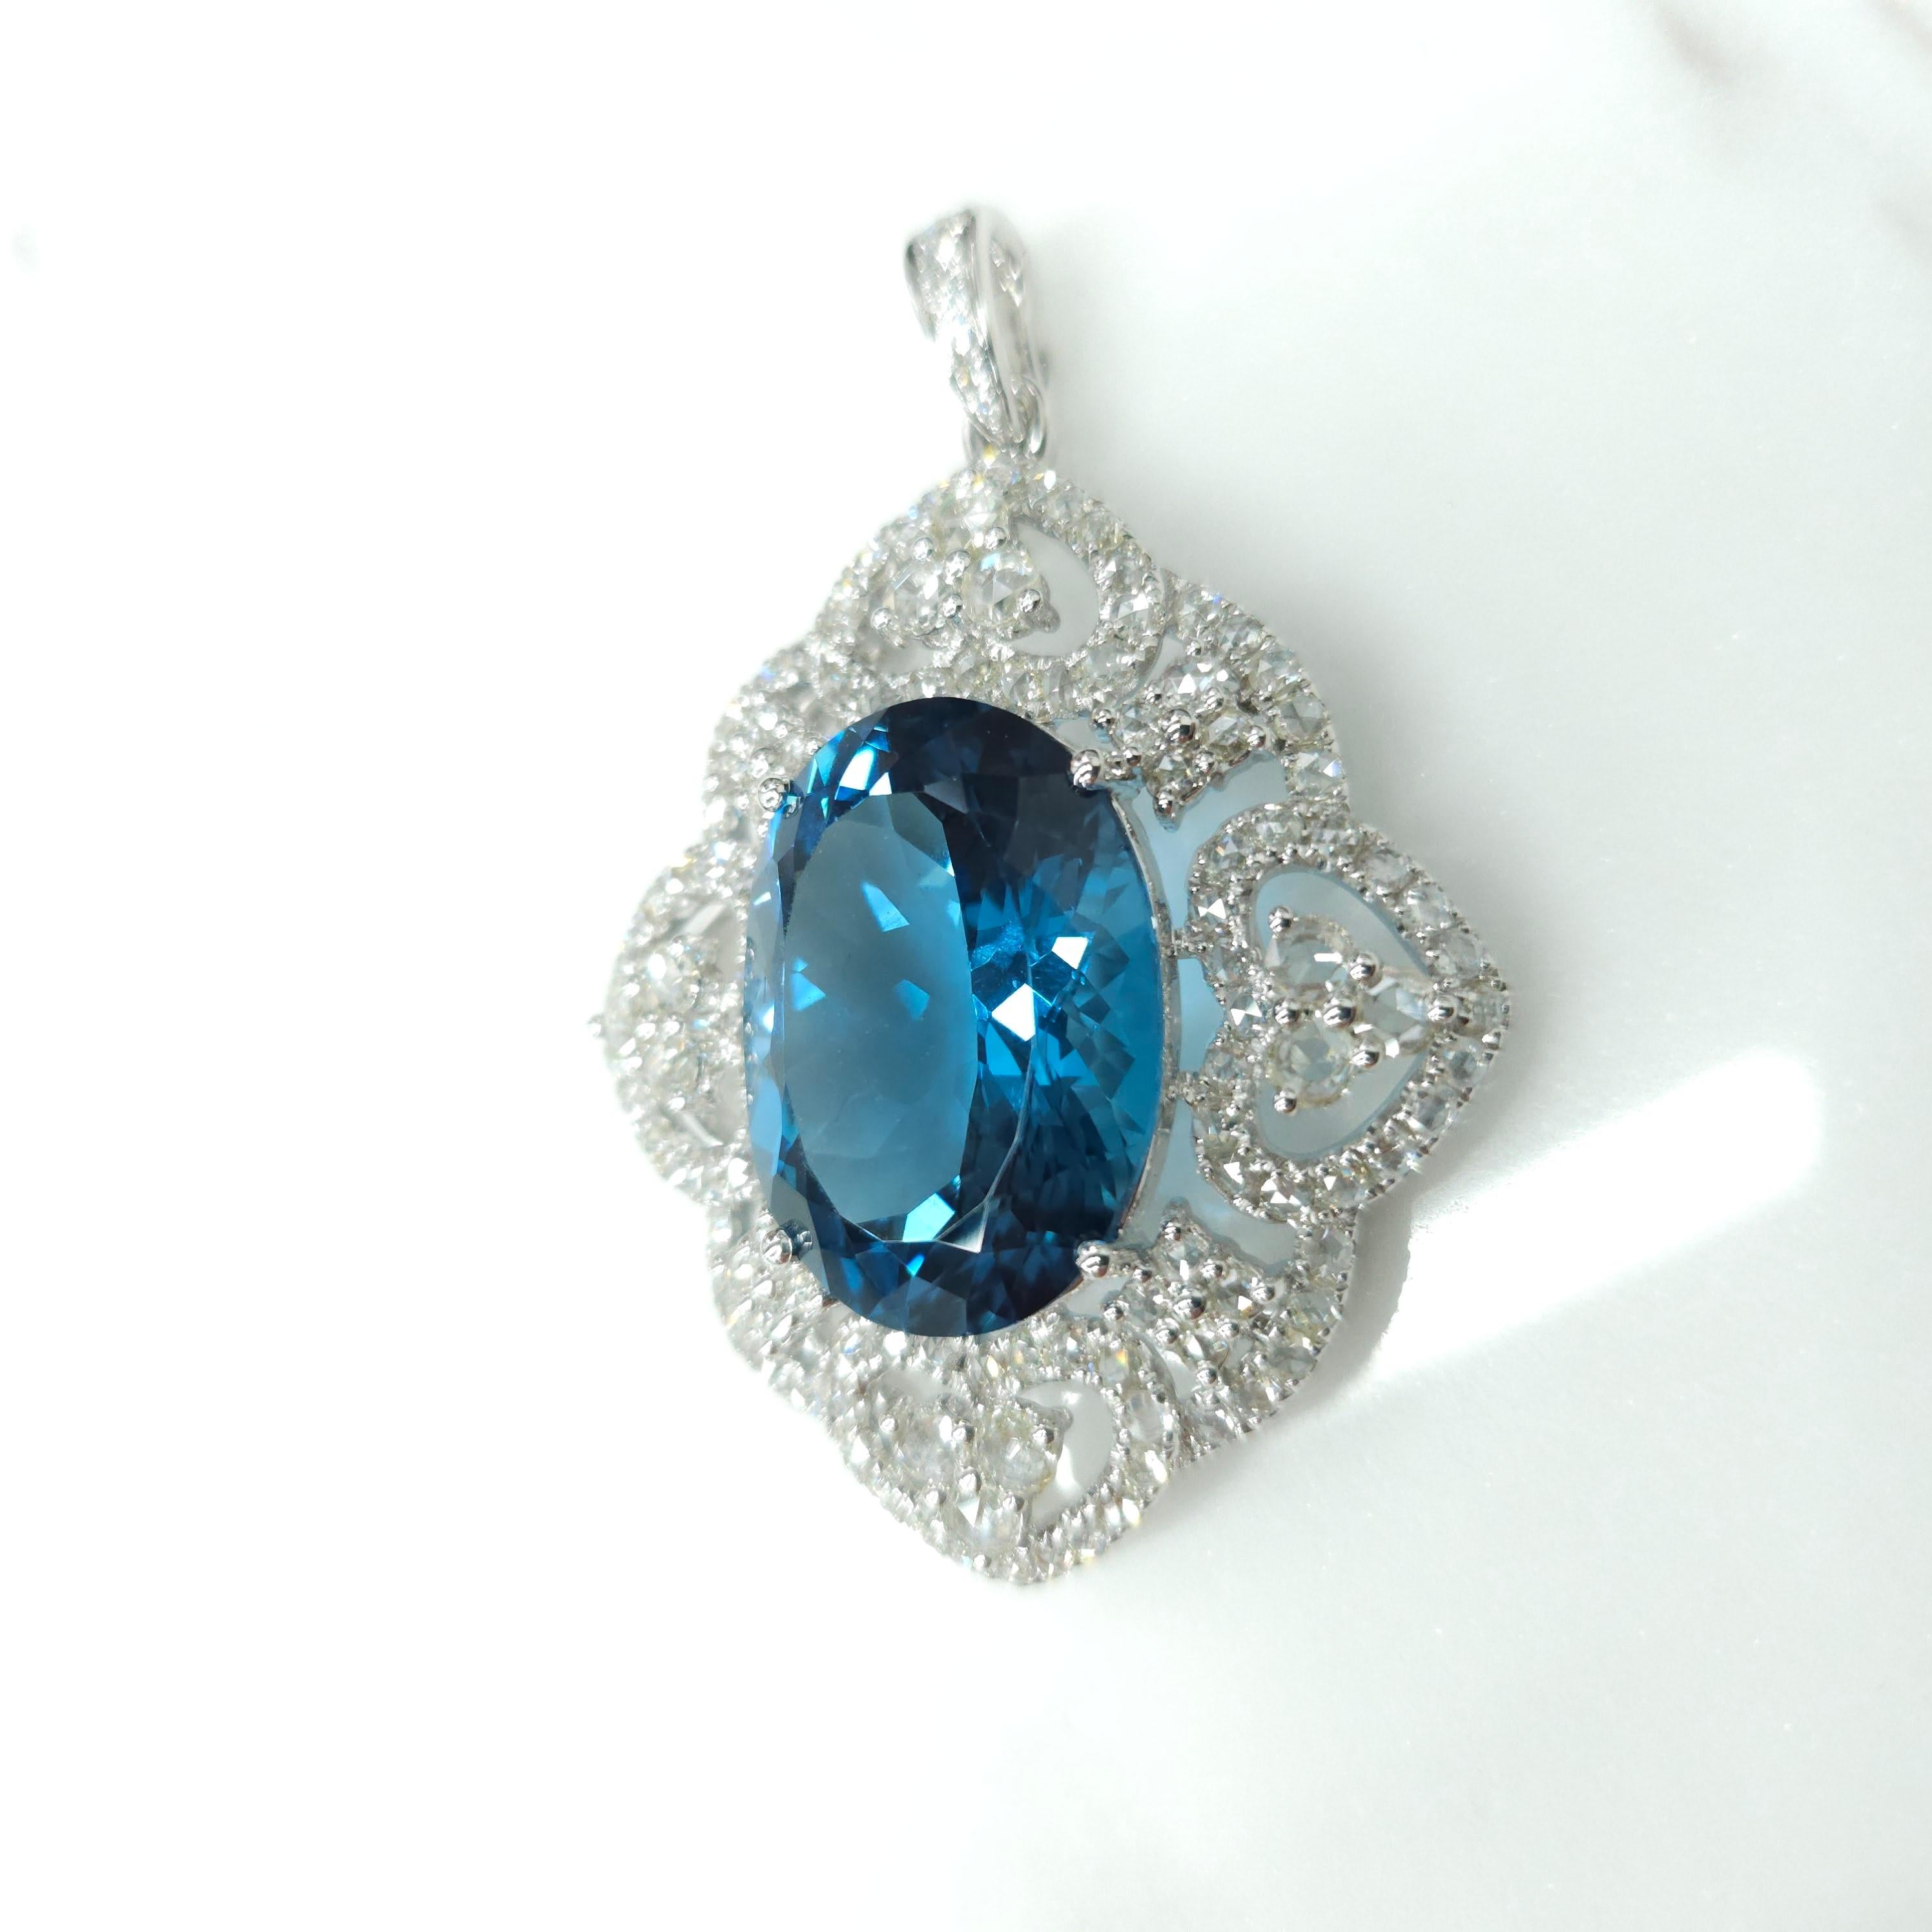 Rehaussez votre collection de bijoux avec cet exquis pendentif de style géorgien orné d'une luxueuse topaze naturelle certifiée IGI de 24,10 carats d'une teinte bleu verdâtre intense qui est vraiment envoûtante. La forme ovale de la topaze ajoute